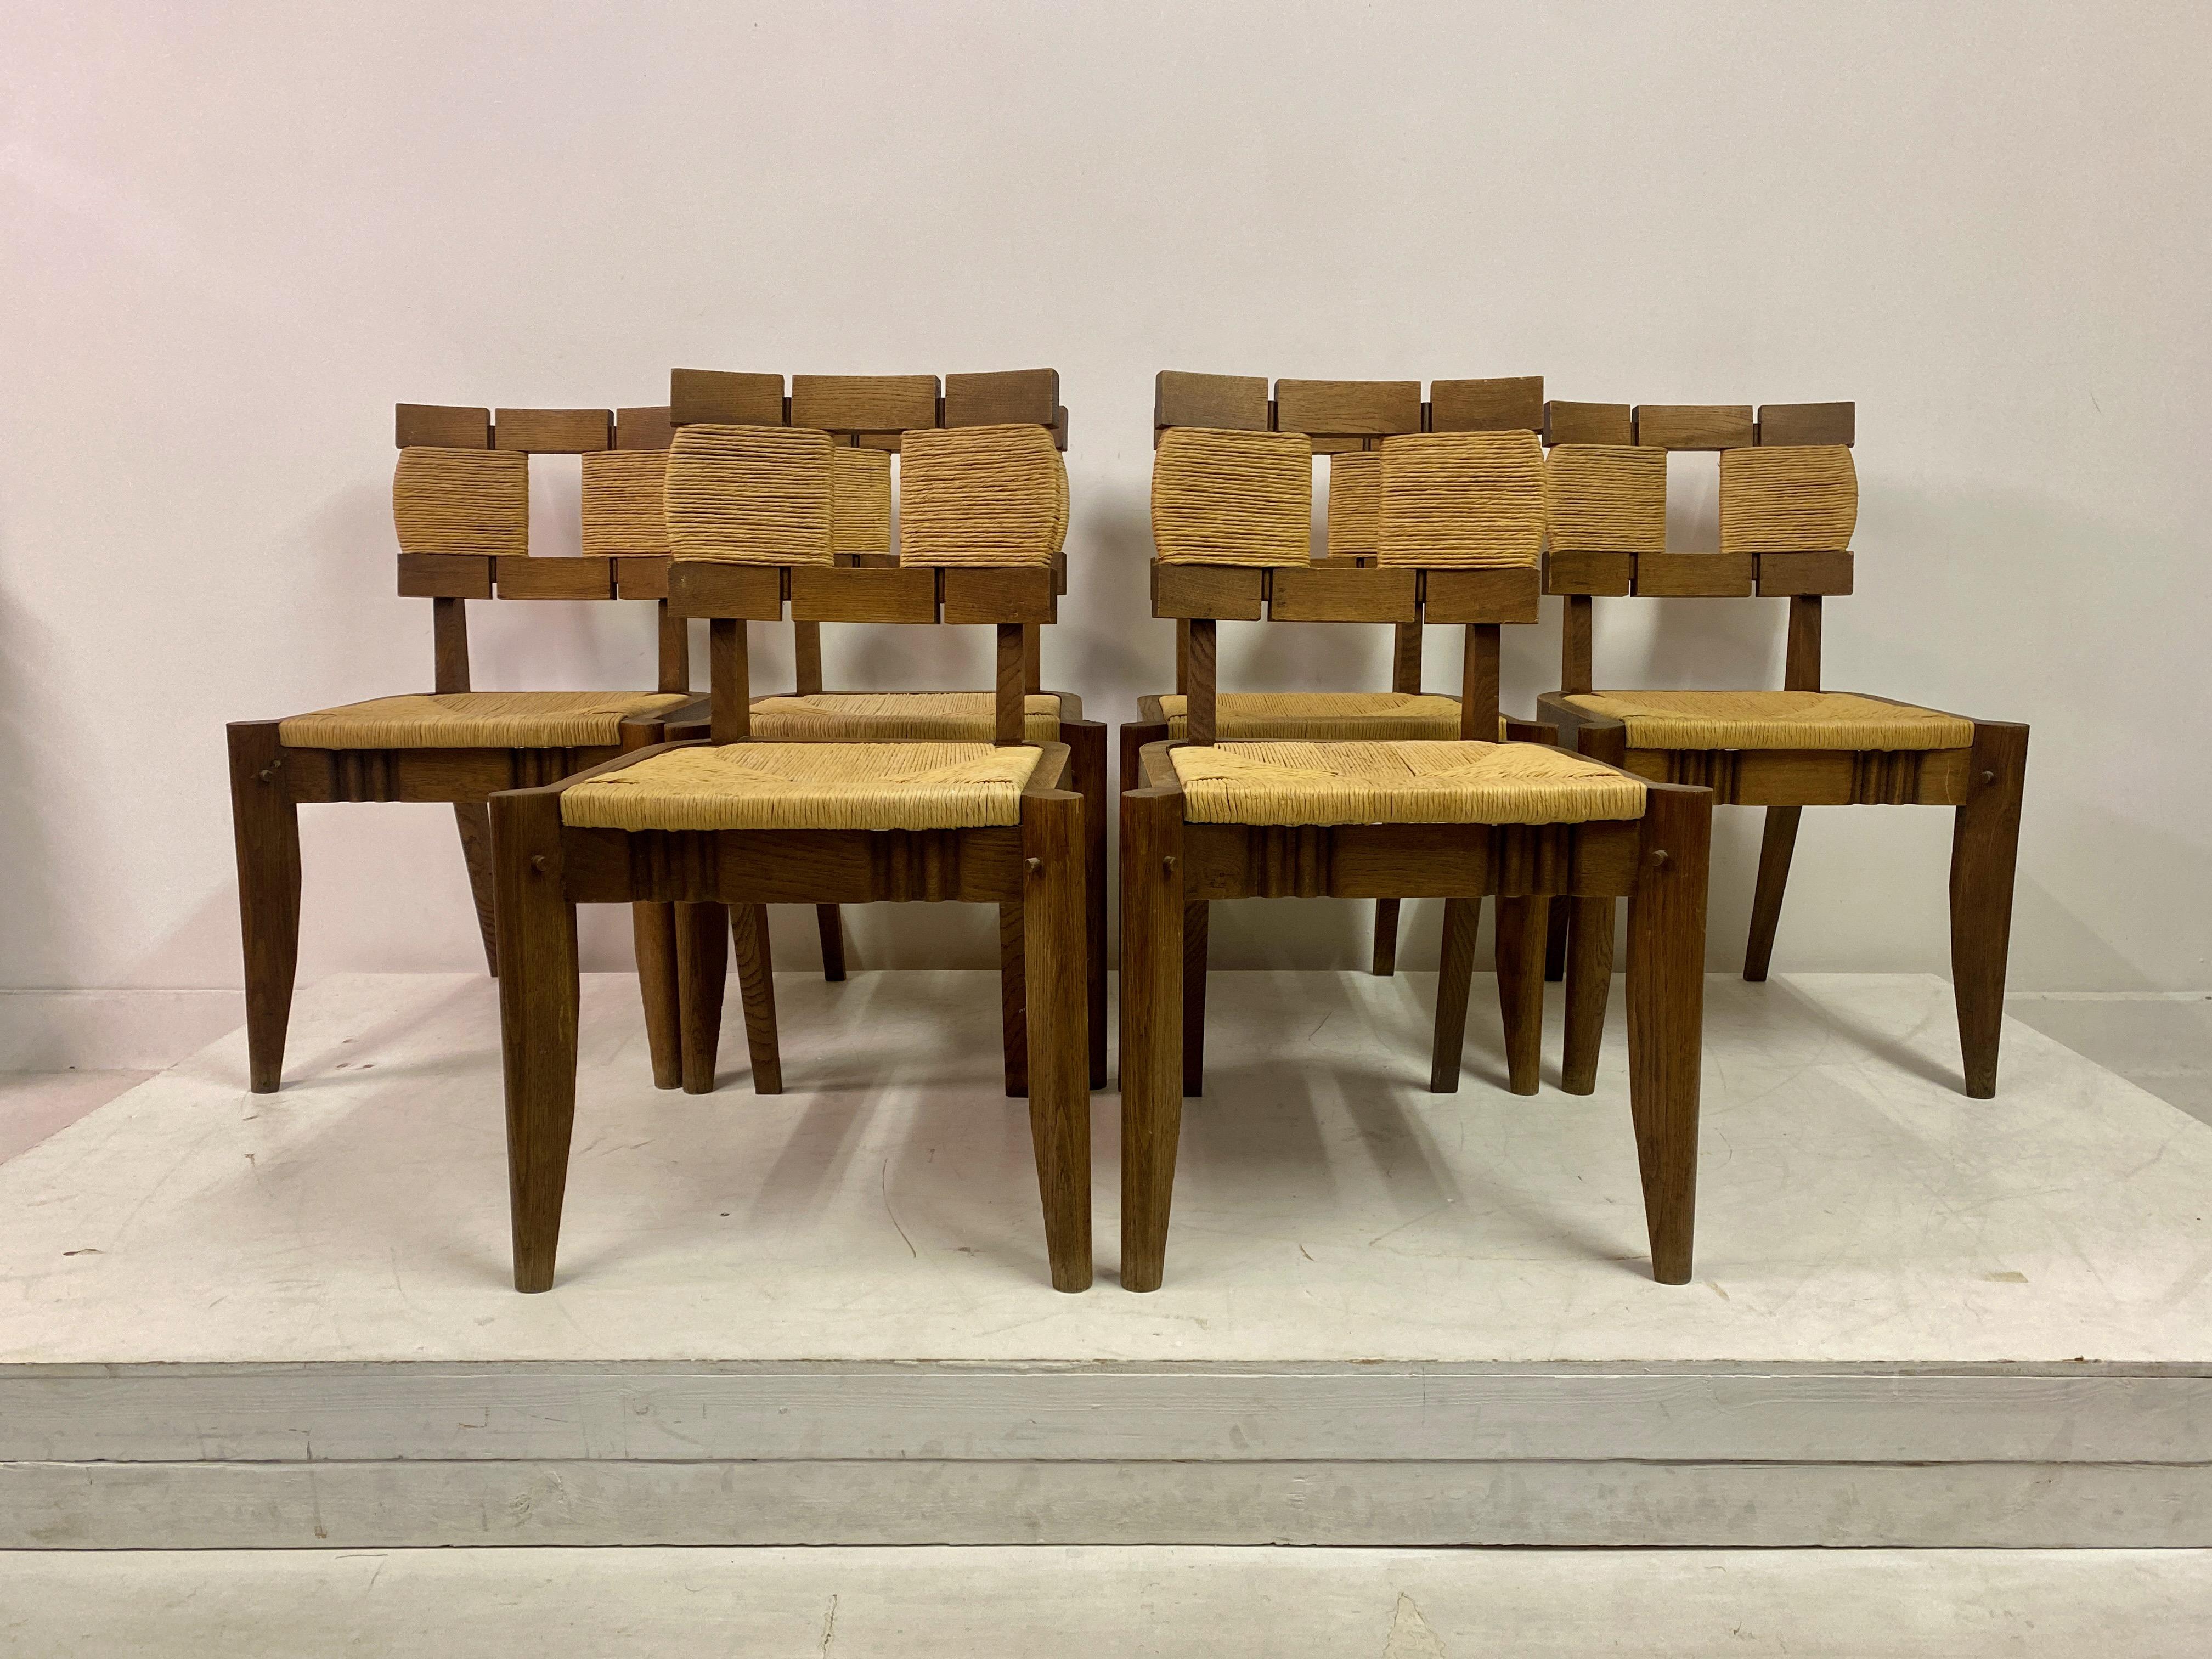 Satz von sechs Esszimmerstühlen

Rahmen aus Eichenholz

Eiliger Sitz

Möglicherweise von Victor Courtray

Frankreich 1950er Jahre